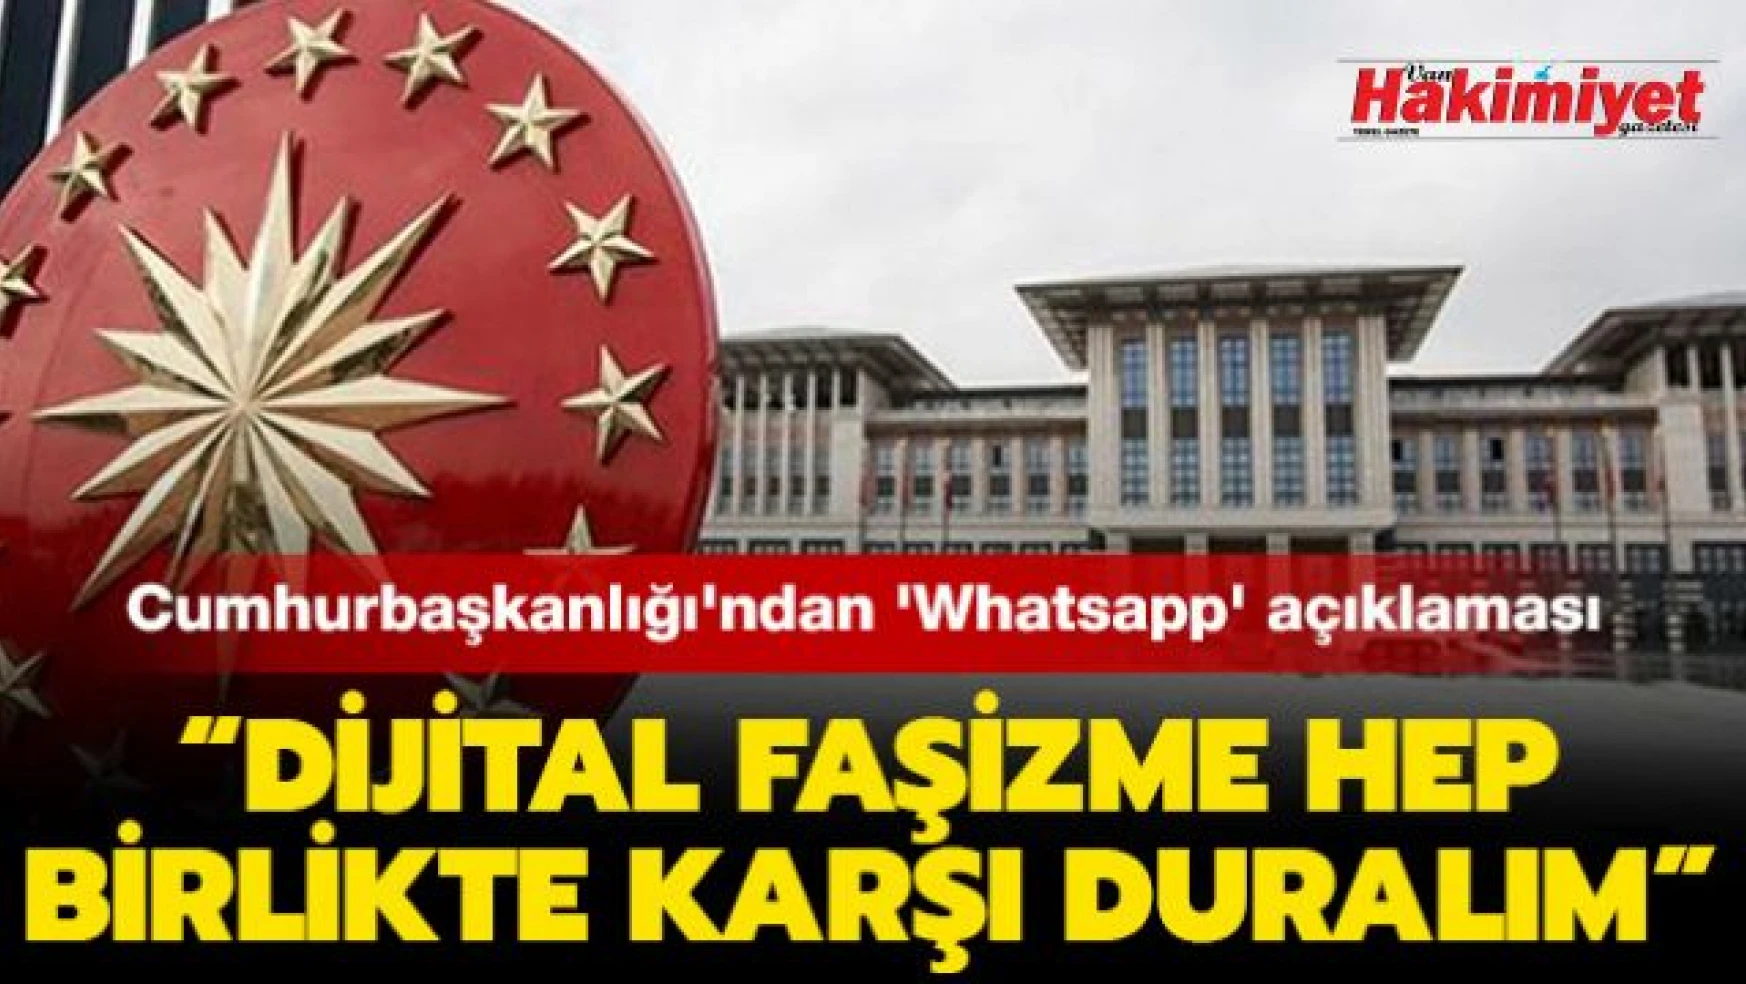 Cumhurbaşkanlığı'ndan 'Whatsapp' açıklaması: 'Dijital faşizme hep birlikte karşı duralım'